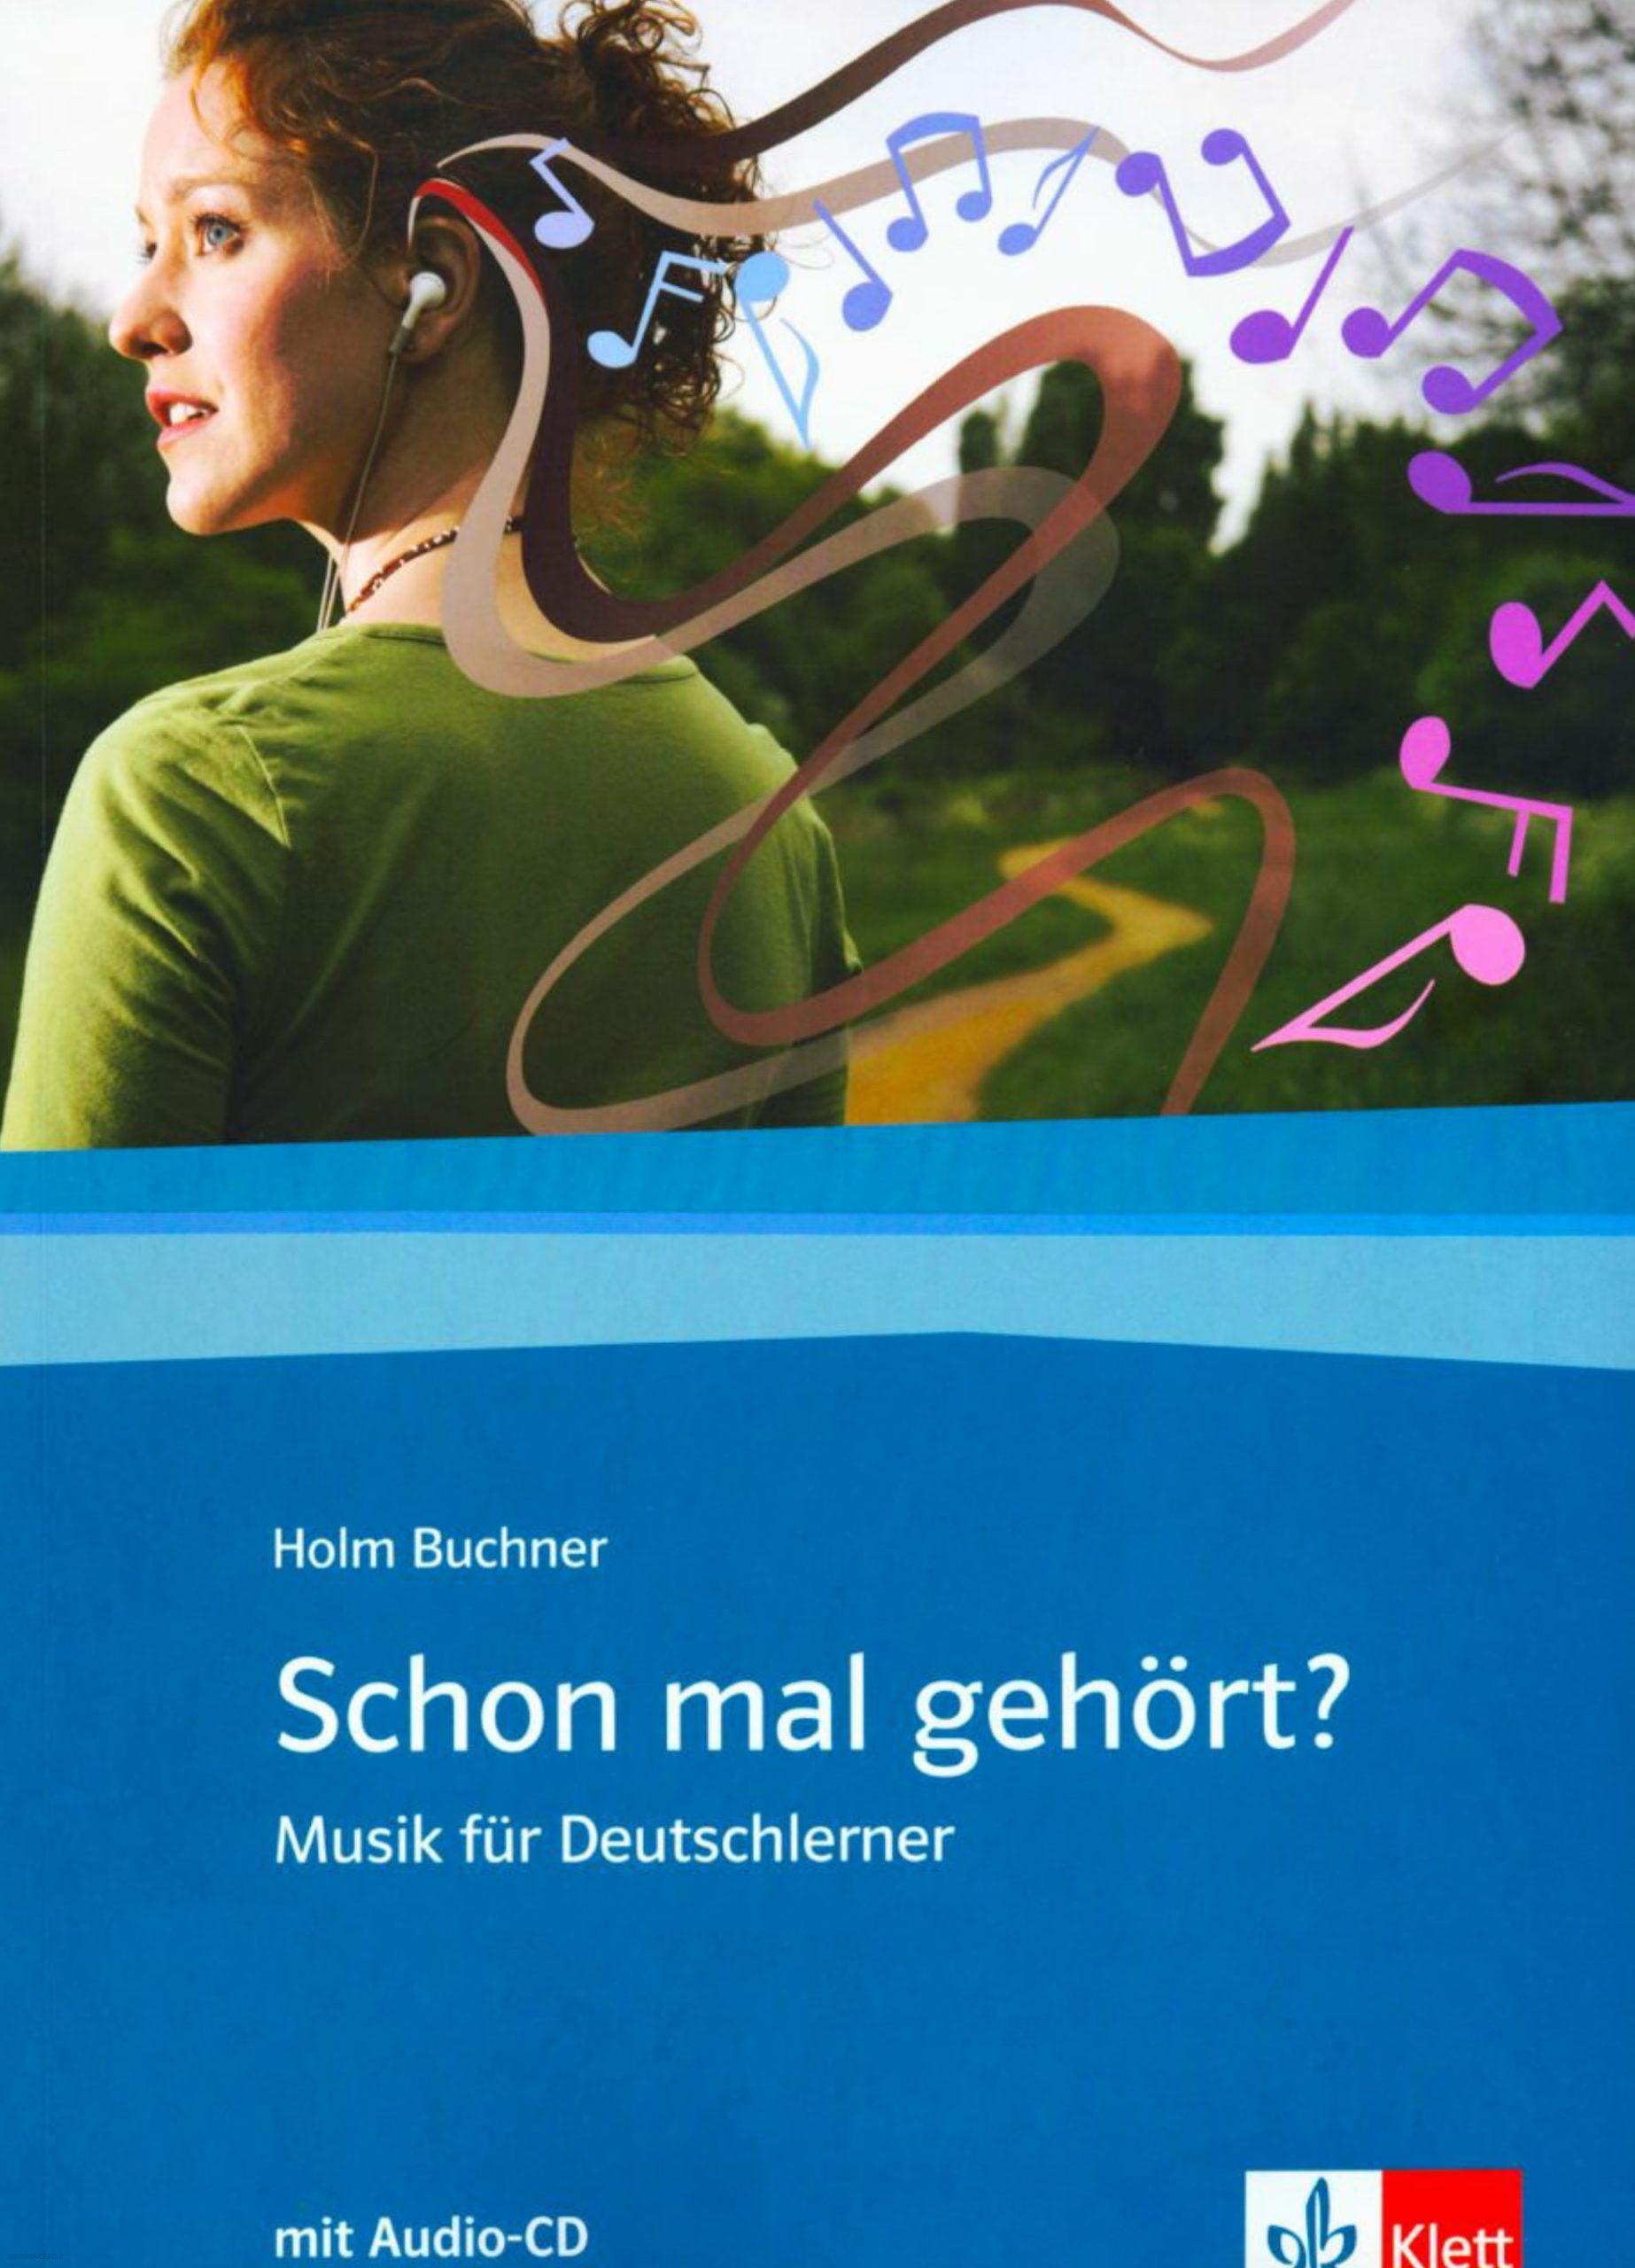 دانلود کتاب آلمانیschon mal gehört musik für deutschlerner